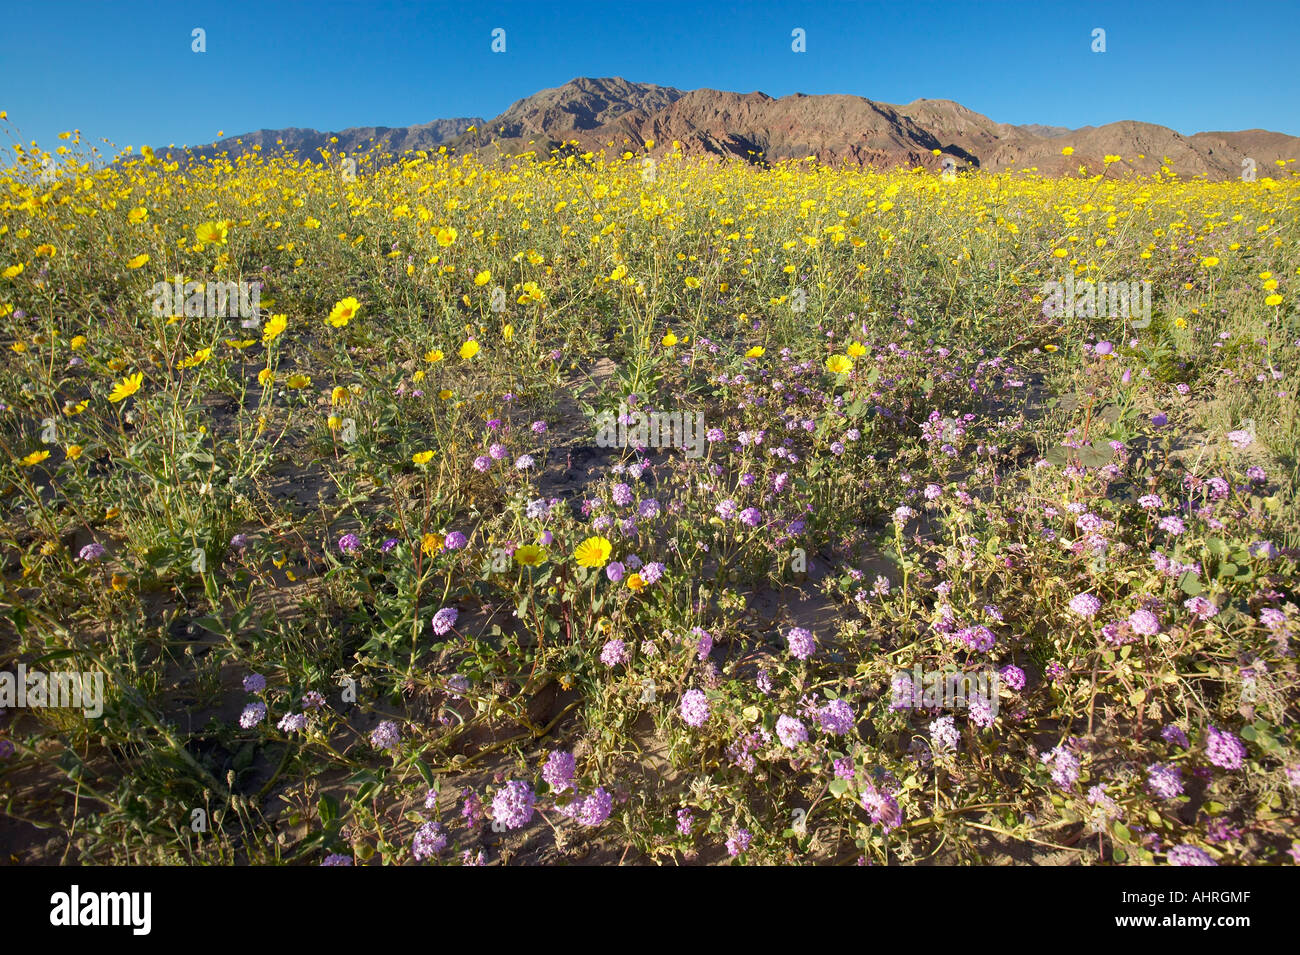 Blick auf die Berge und spektakuläre Wüste Gold und verschiedene Frühlingsblumen südlich von Furnace Creek in Death Valley Nationalpark CA Stockfoto